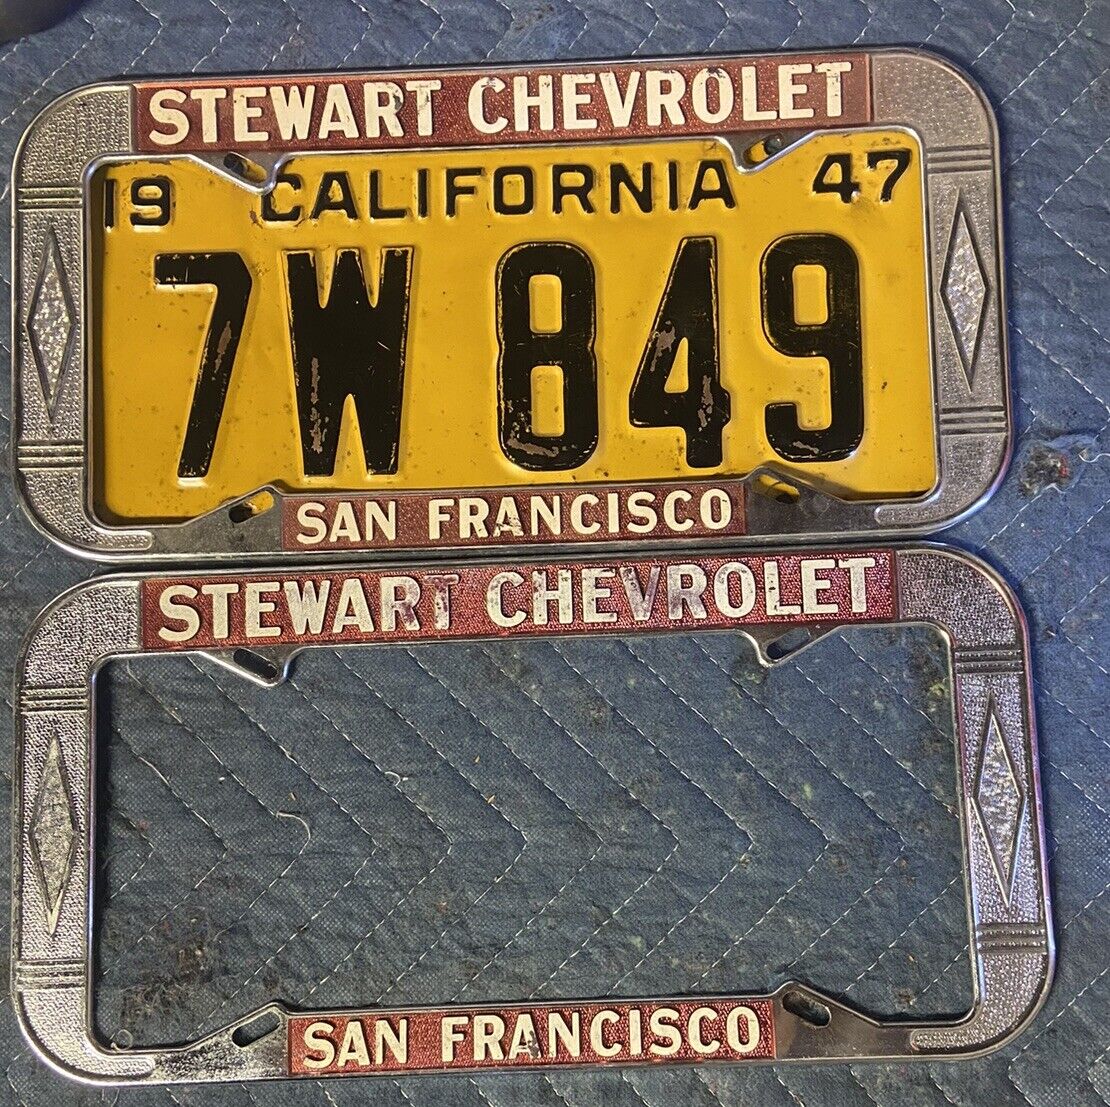 Vintage Stewart Chevrolet San Francisco License Plate Frames